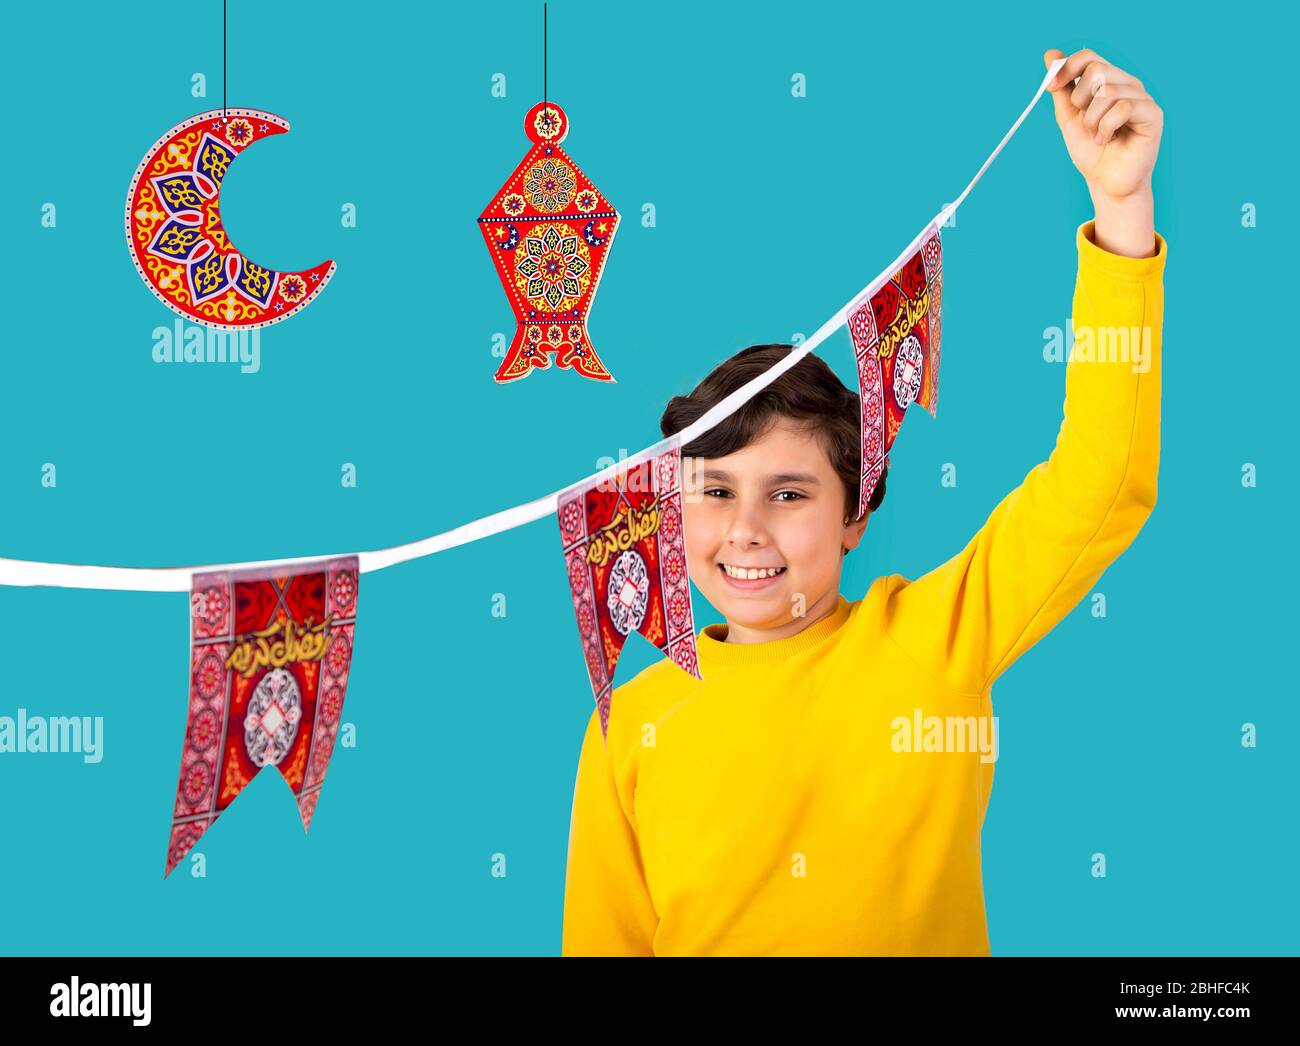 Musulmani Kid preparare decorazioni per celebrare il festival